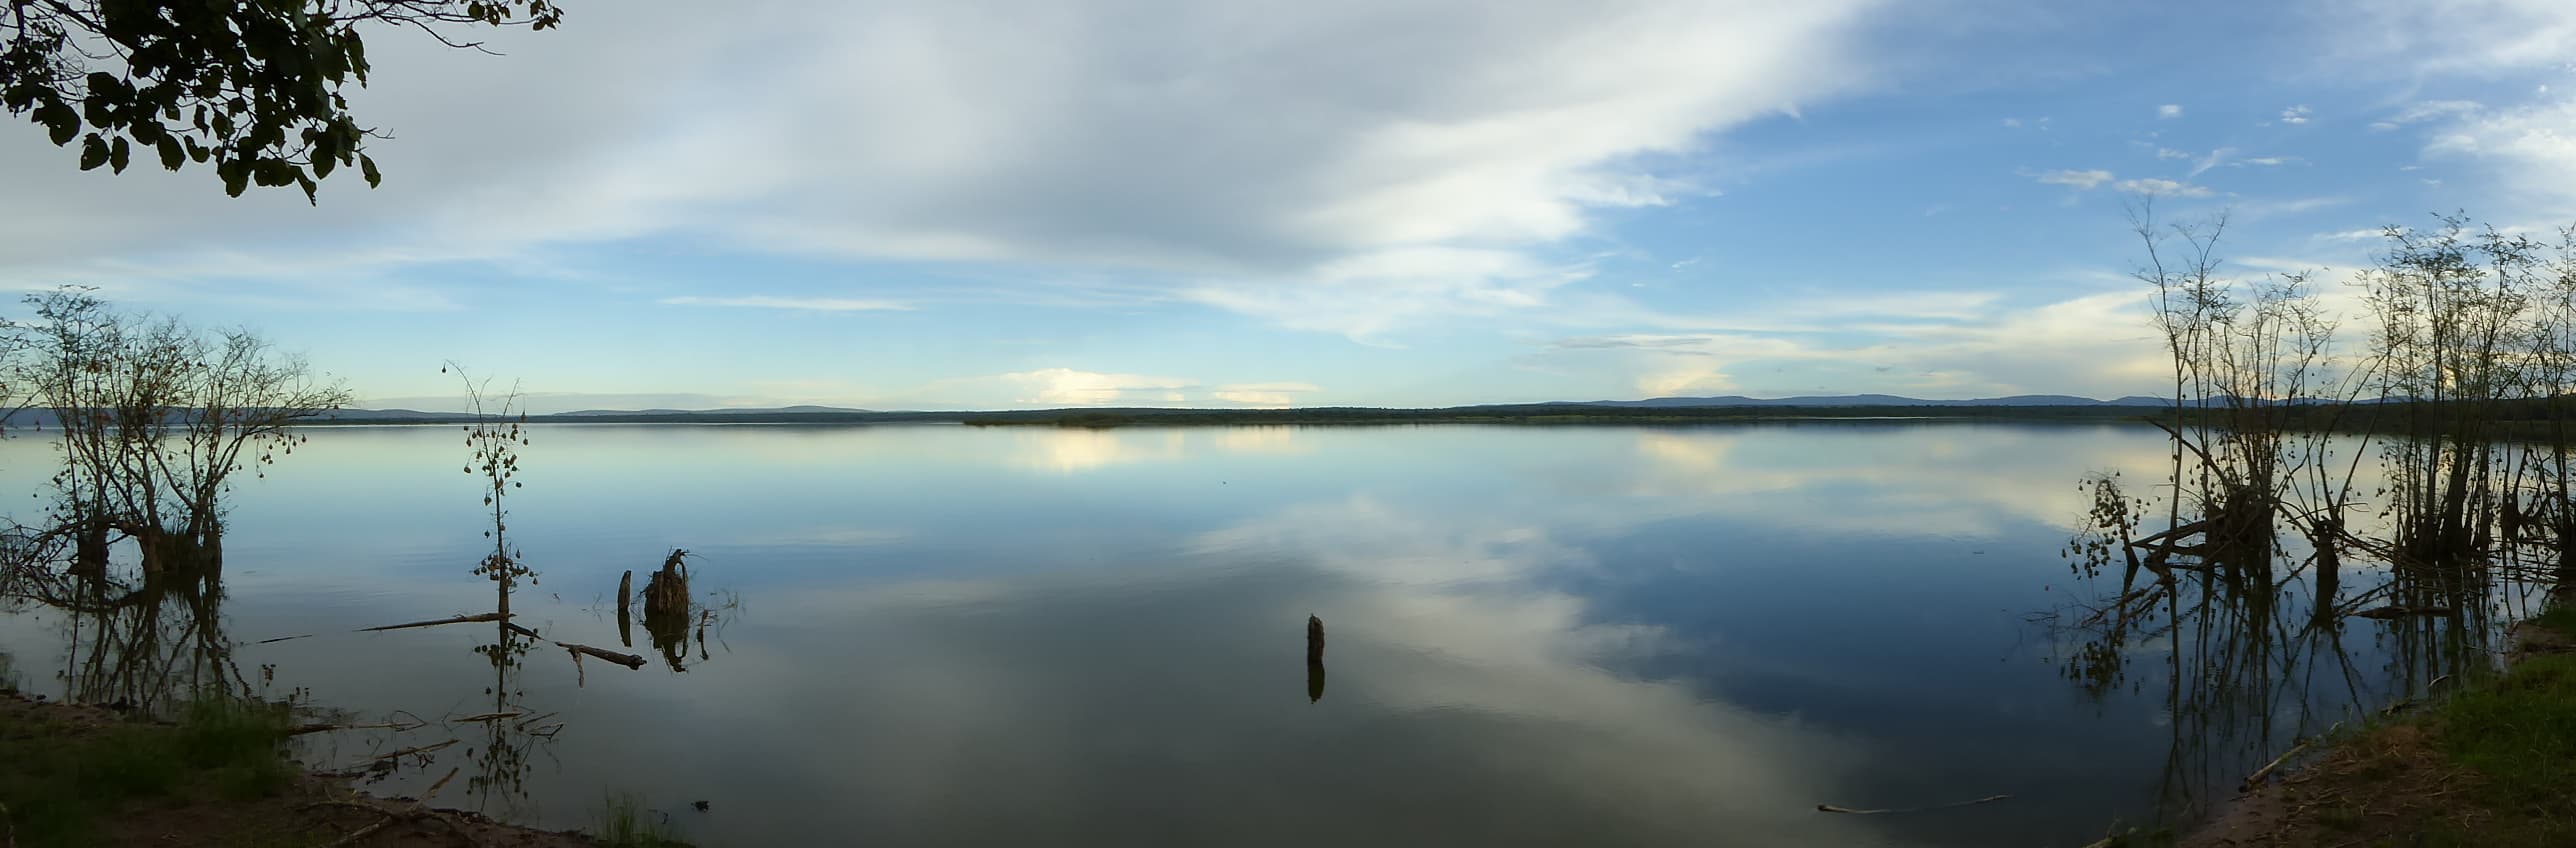 Sandee - Lake Ihema